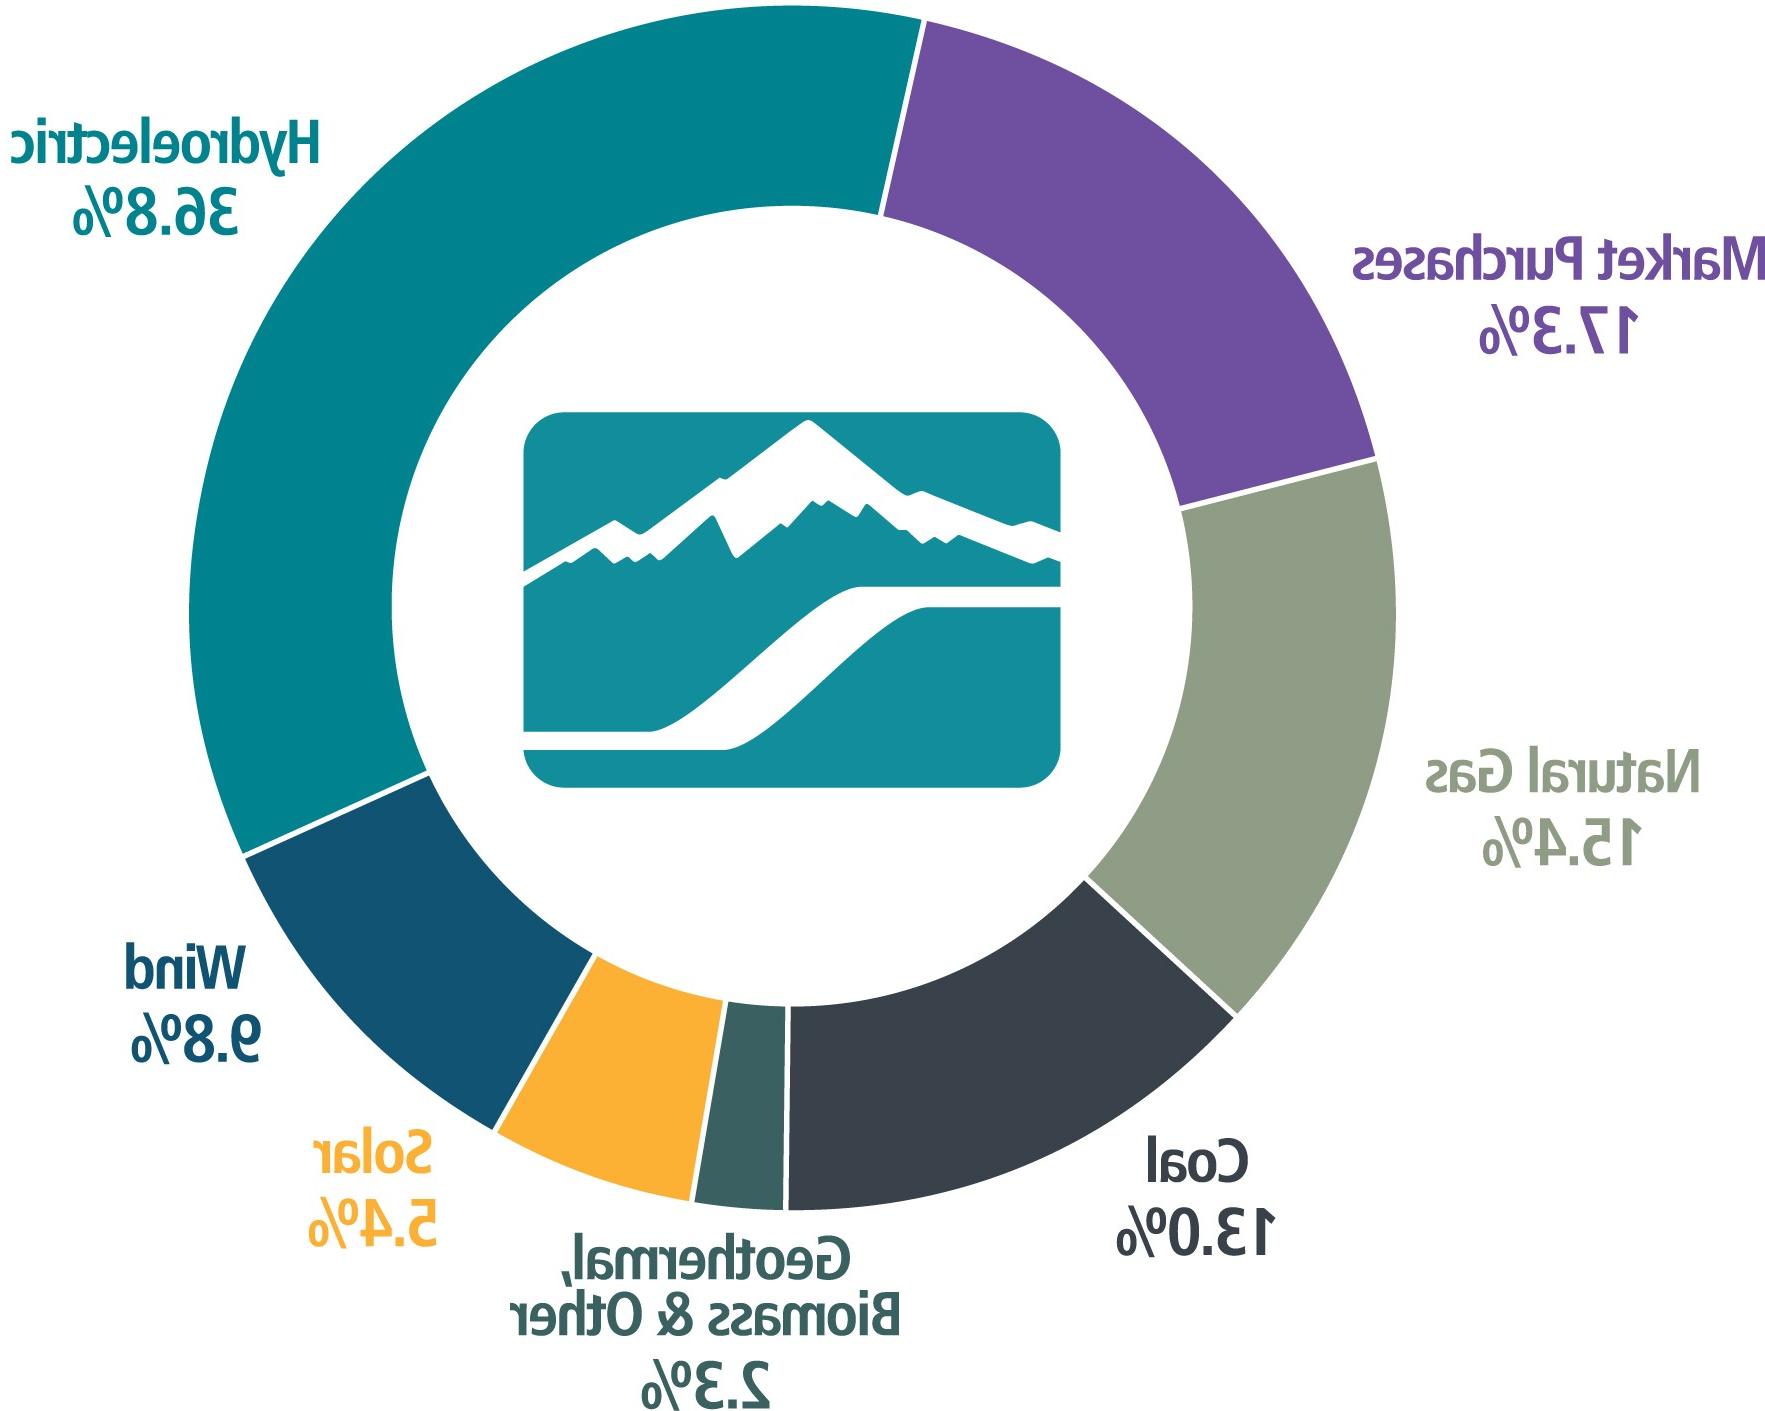 甜甜圈图显示2022年爱达荷州电力能源结构:31.1%水力发电，10%风力发电，3.8% solar, 2.3%地热/生物质/其他，19.9% coal, 12.6%天然气，20%.3%市场采购